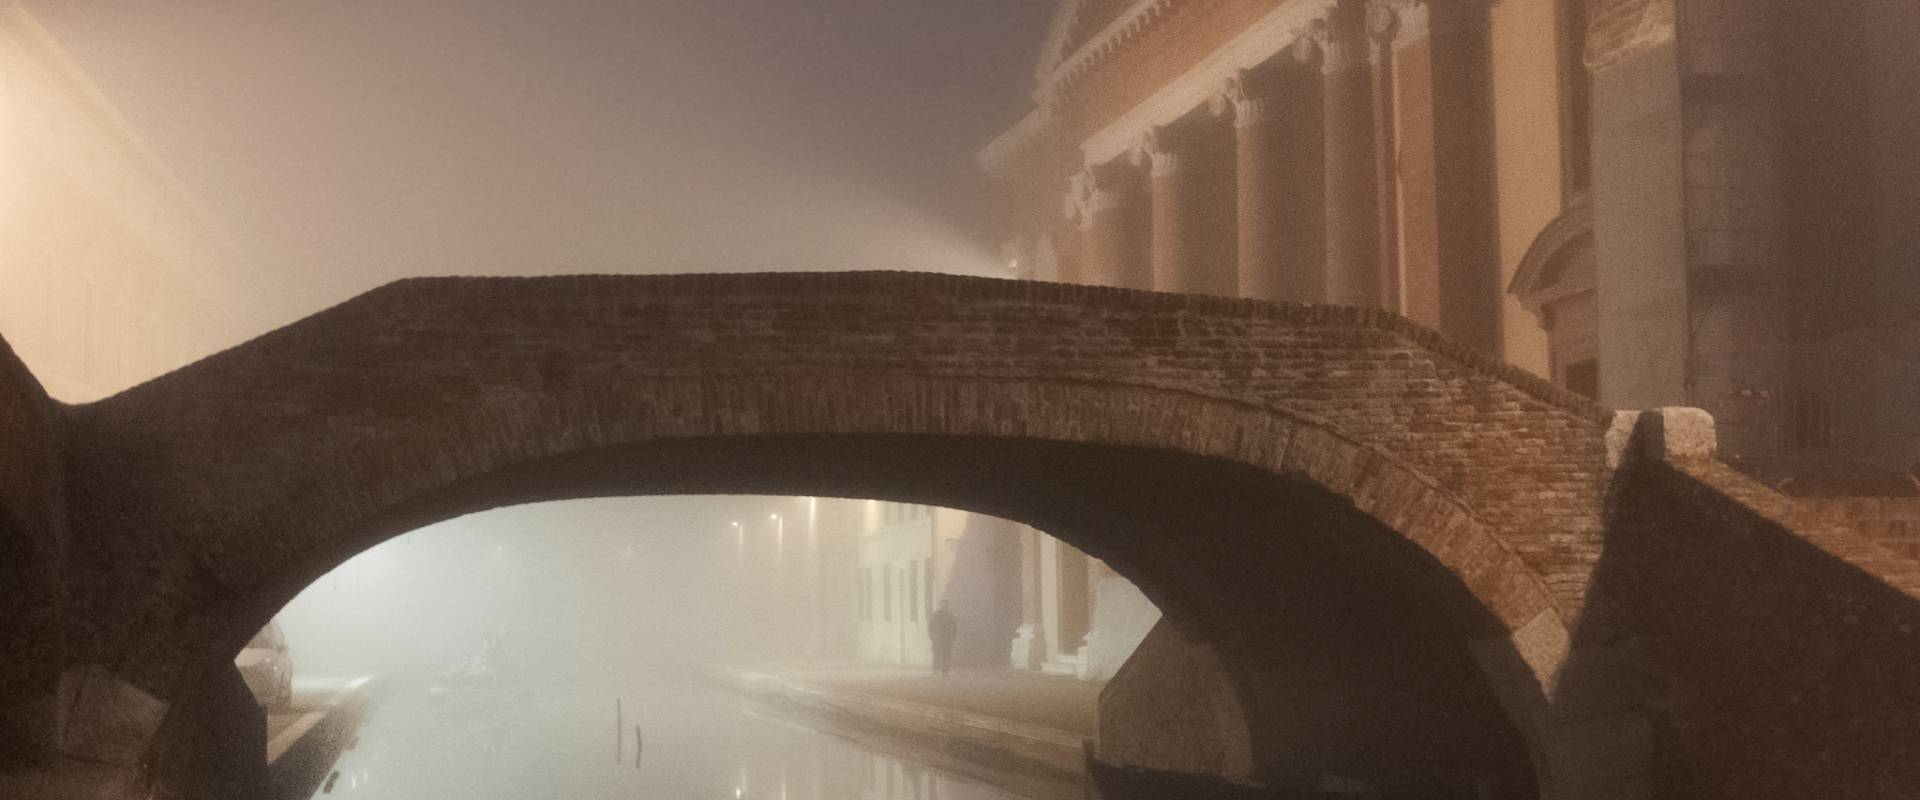 Luci nella nebbia foto di Vanni Lazzari